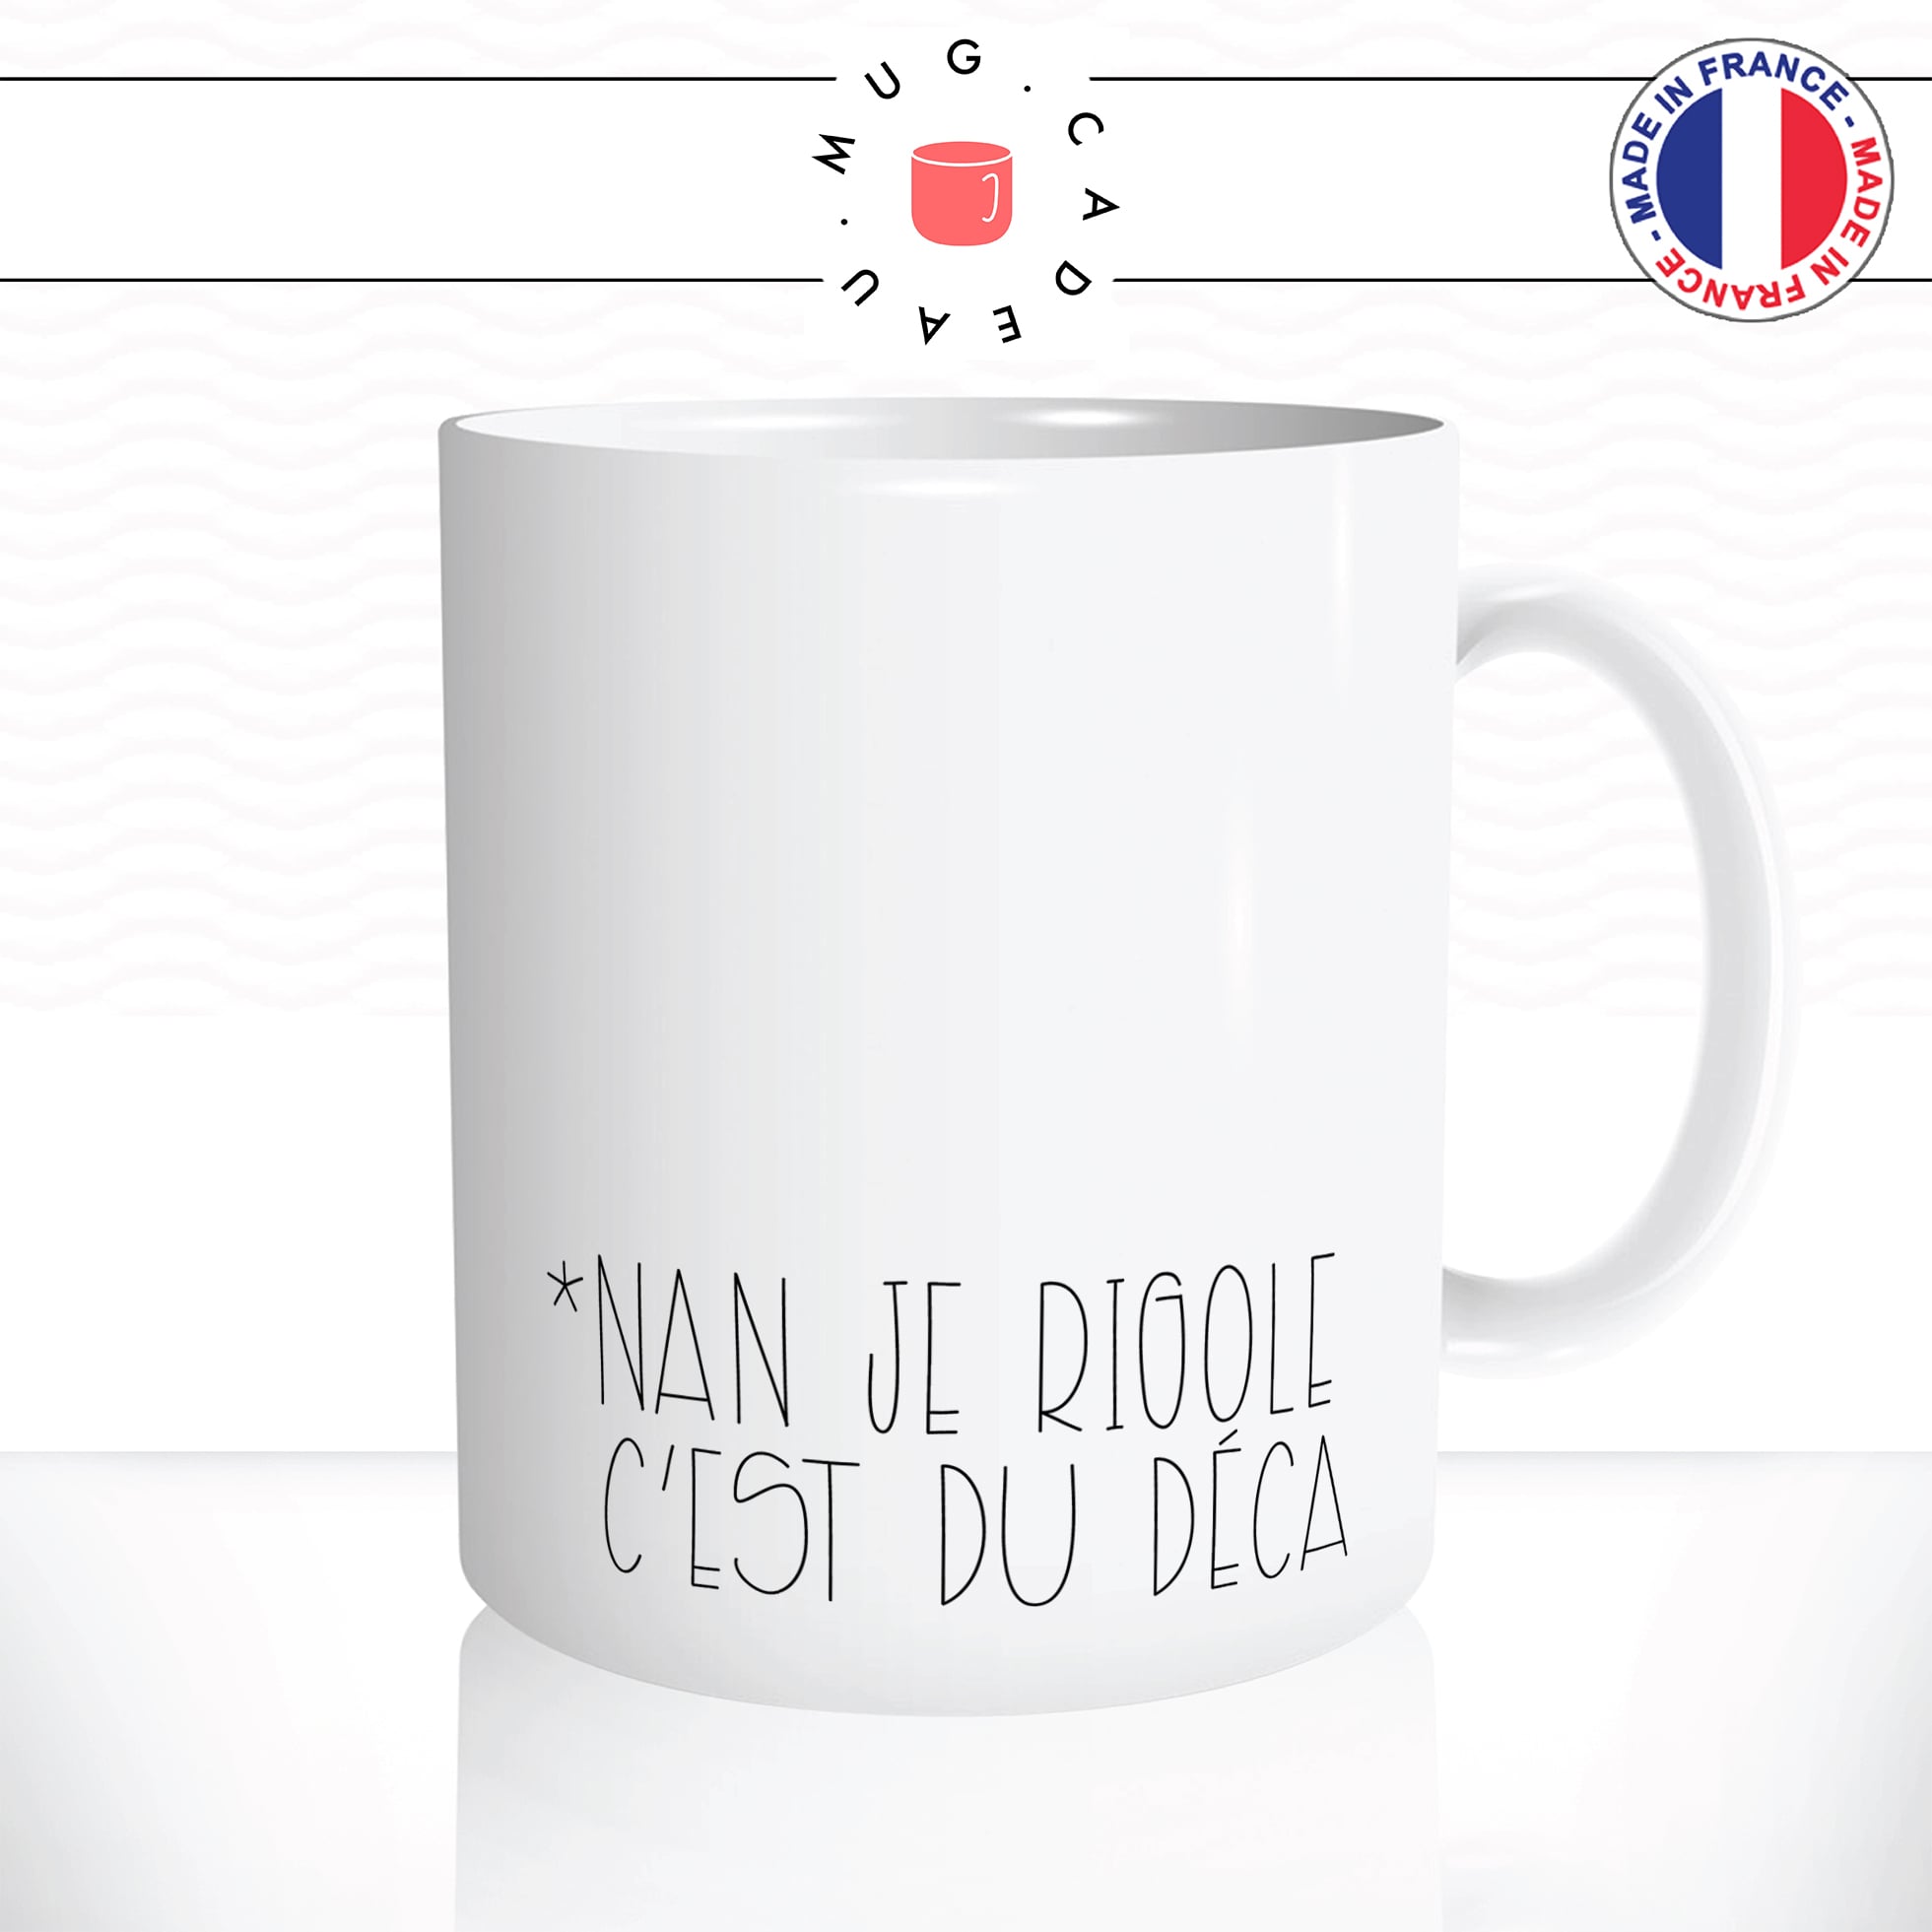 mug-tasse-coffee-caf-rigole-deca-decaf-decafeiné-energie-humour-fun-matin-reveil-café-thé-mugs-tasses-idée-cadeau-original-personnalisée2-min